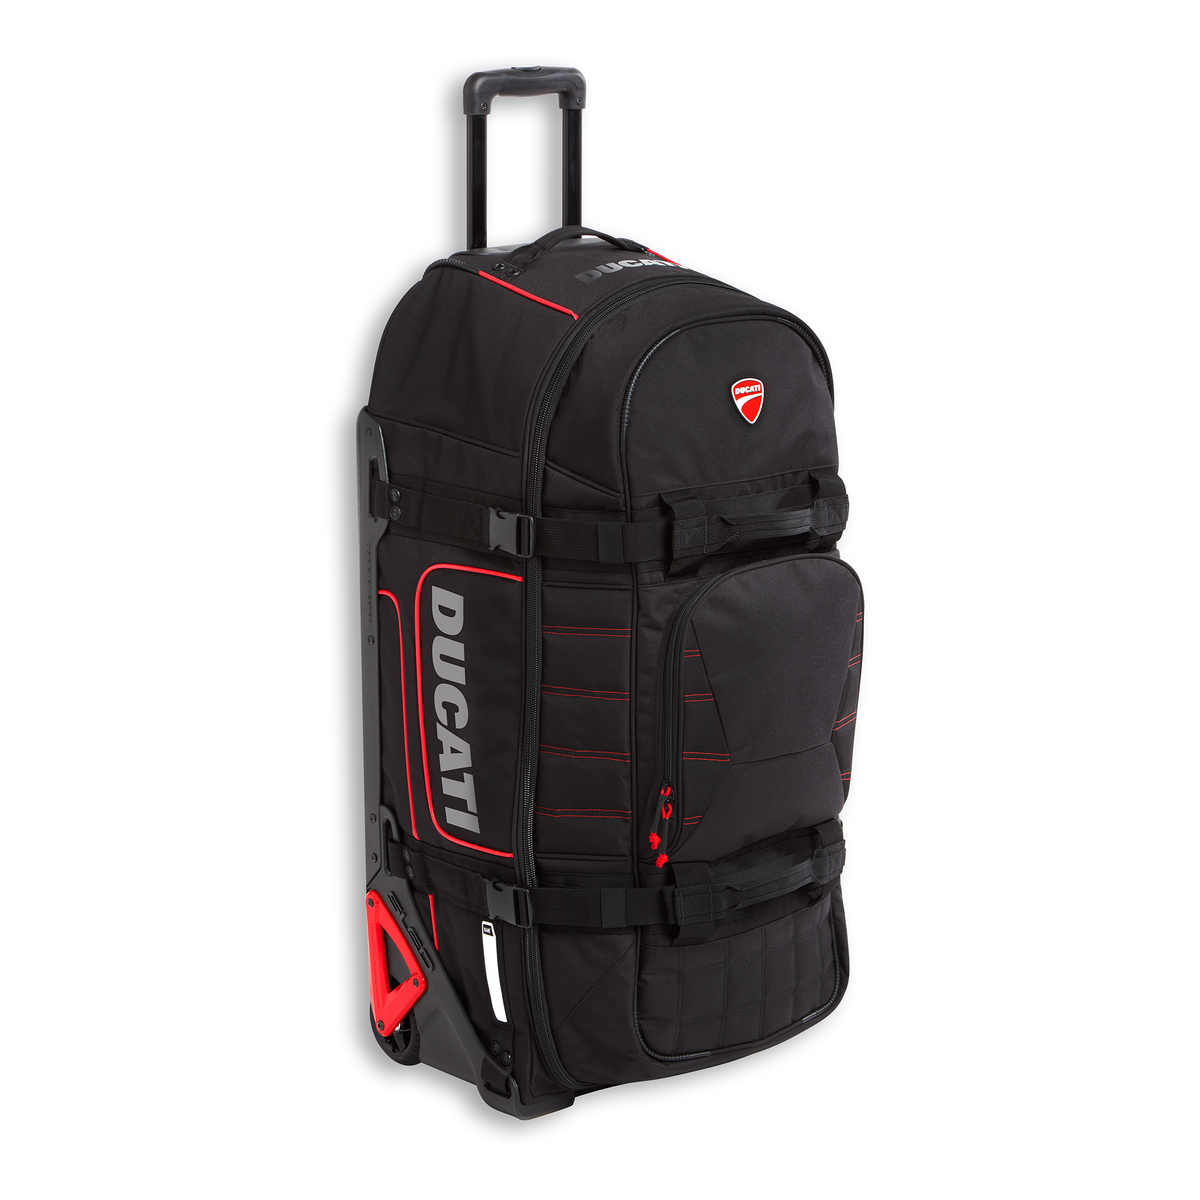 Ducati Redline T1 Trolley Bag